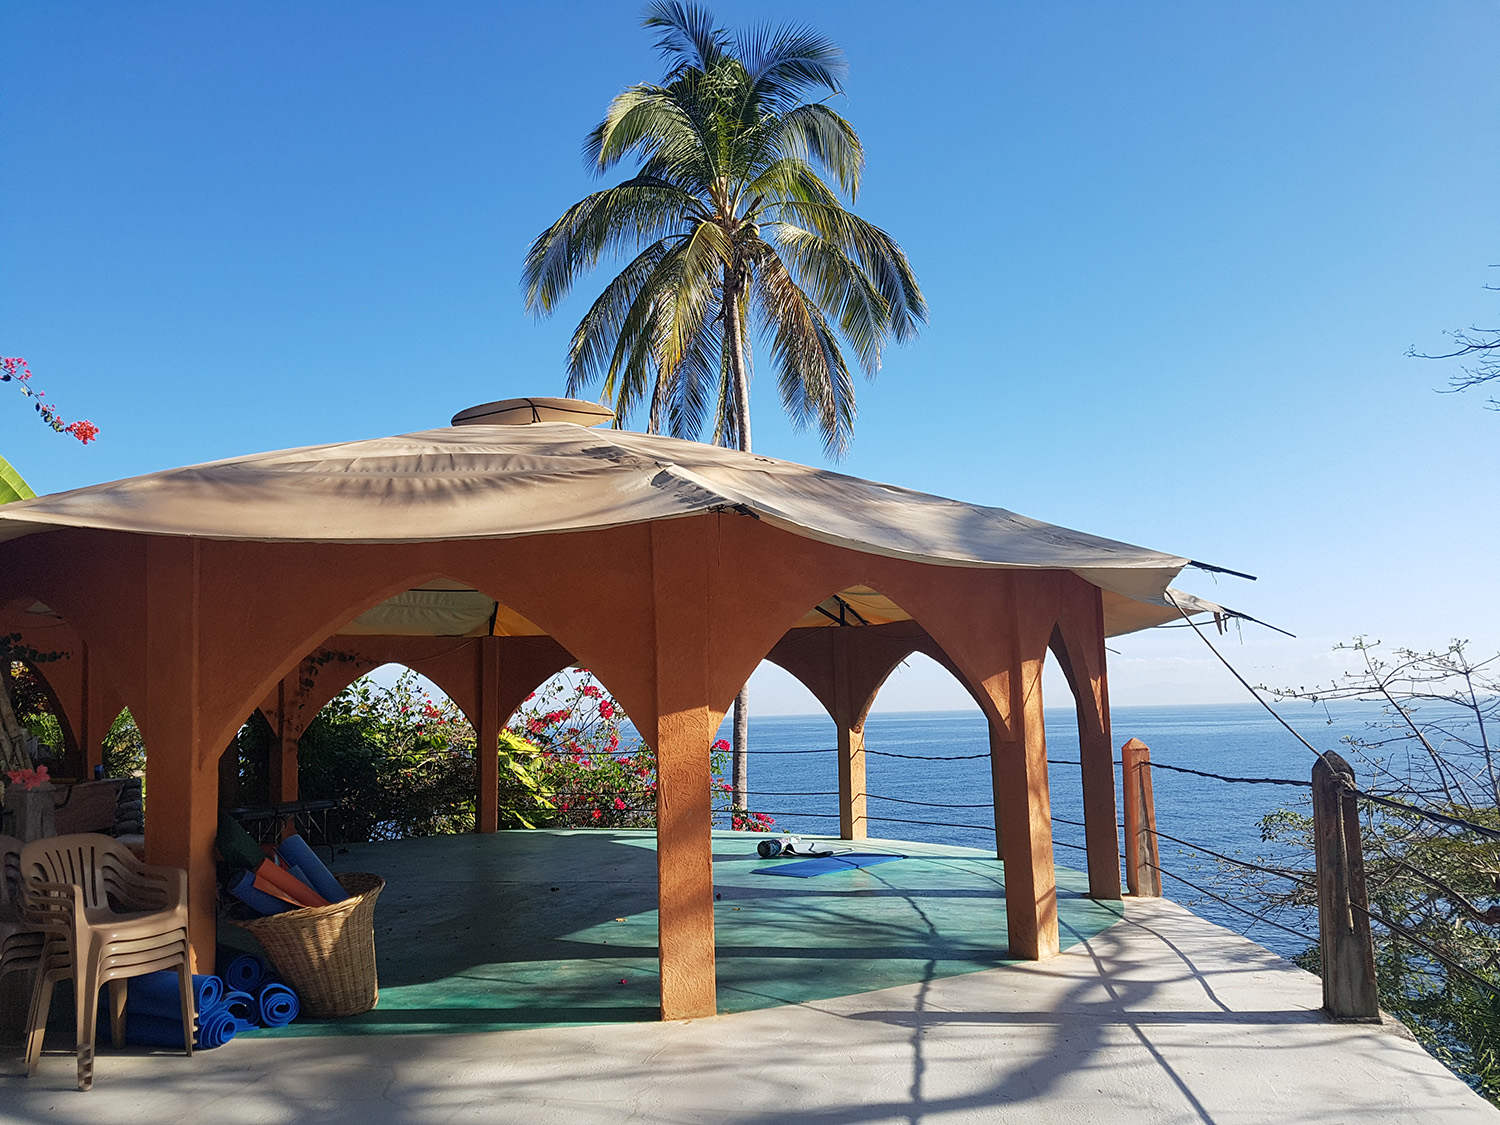 Mexico Yoga Retreat @ Casa Isabel Retreat Center, Yelapa Mexico